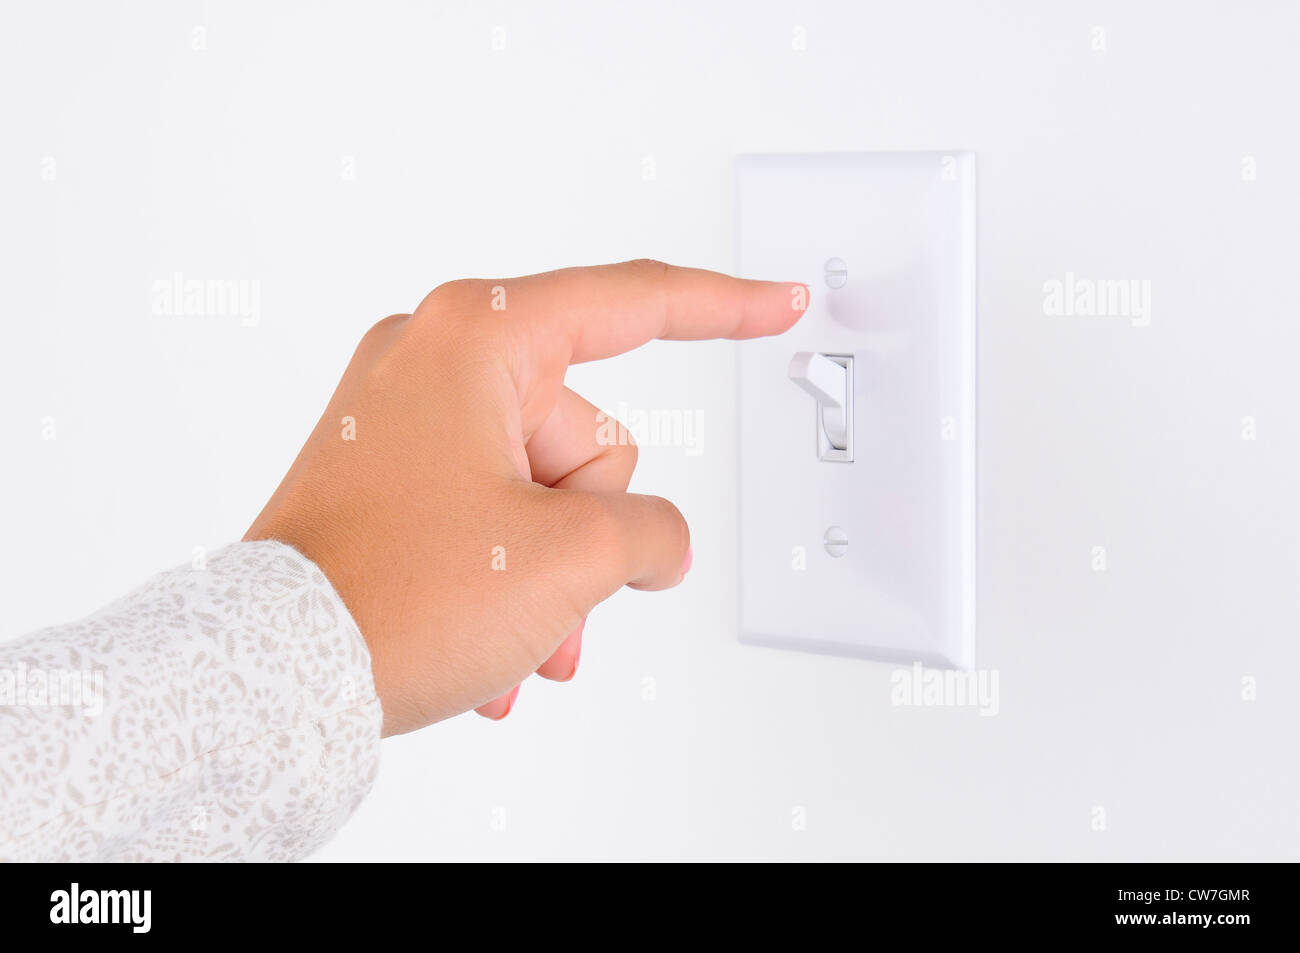 La main de femme avec le doigt sur l'interrupteur d'éclairage, sur le point d'éteindre les lumières. Libre de part et de l'interrupteur seulement. Format horizontal. Banque D'Images